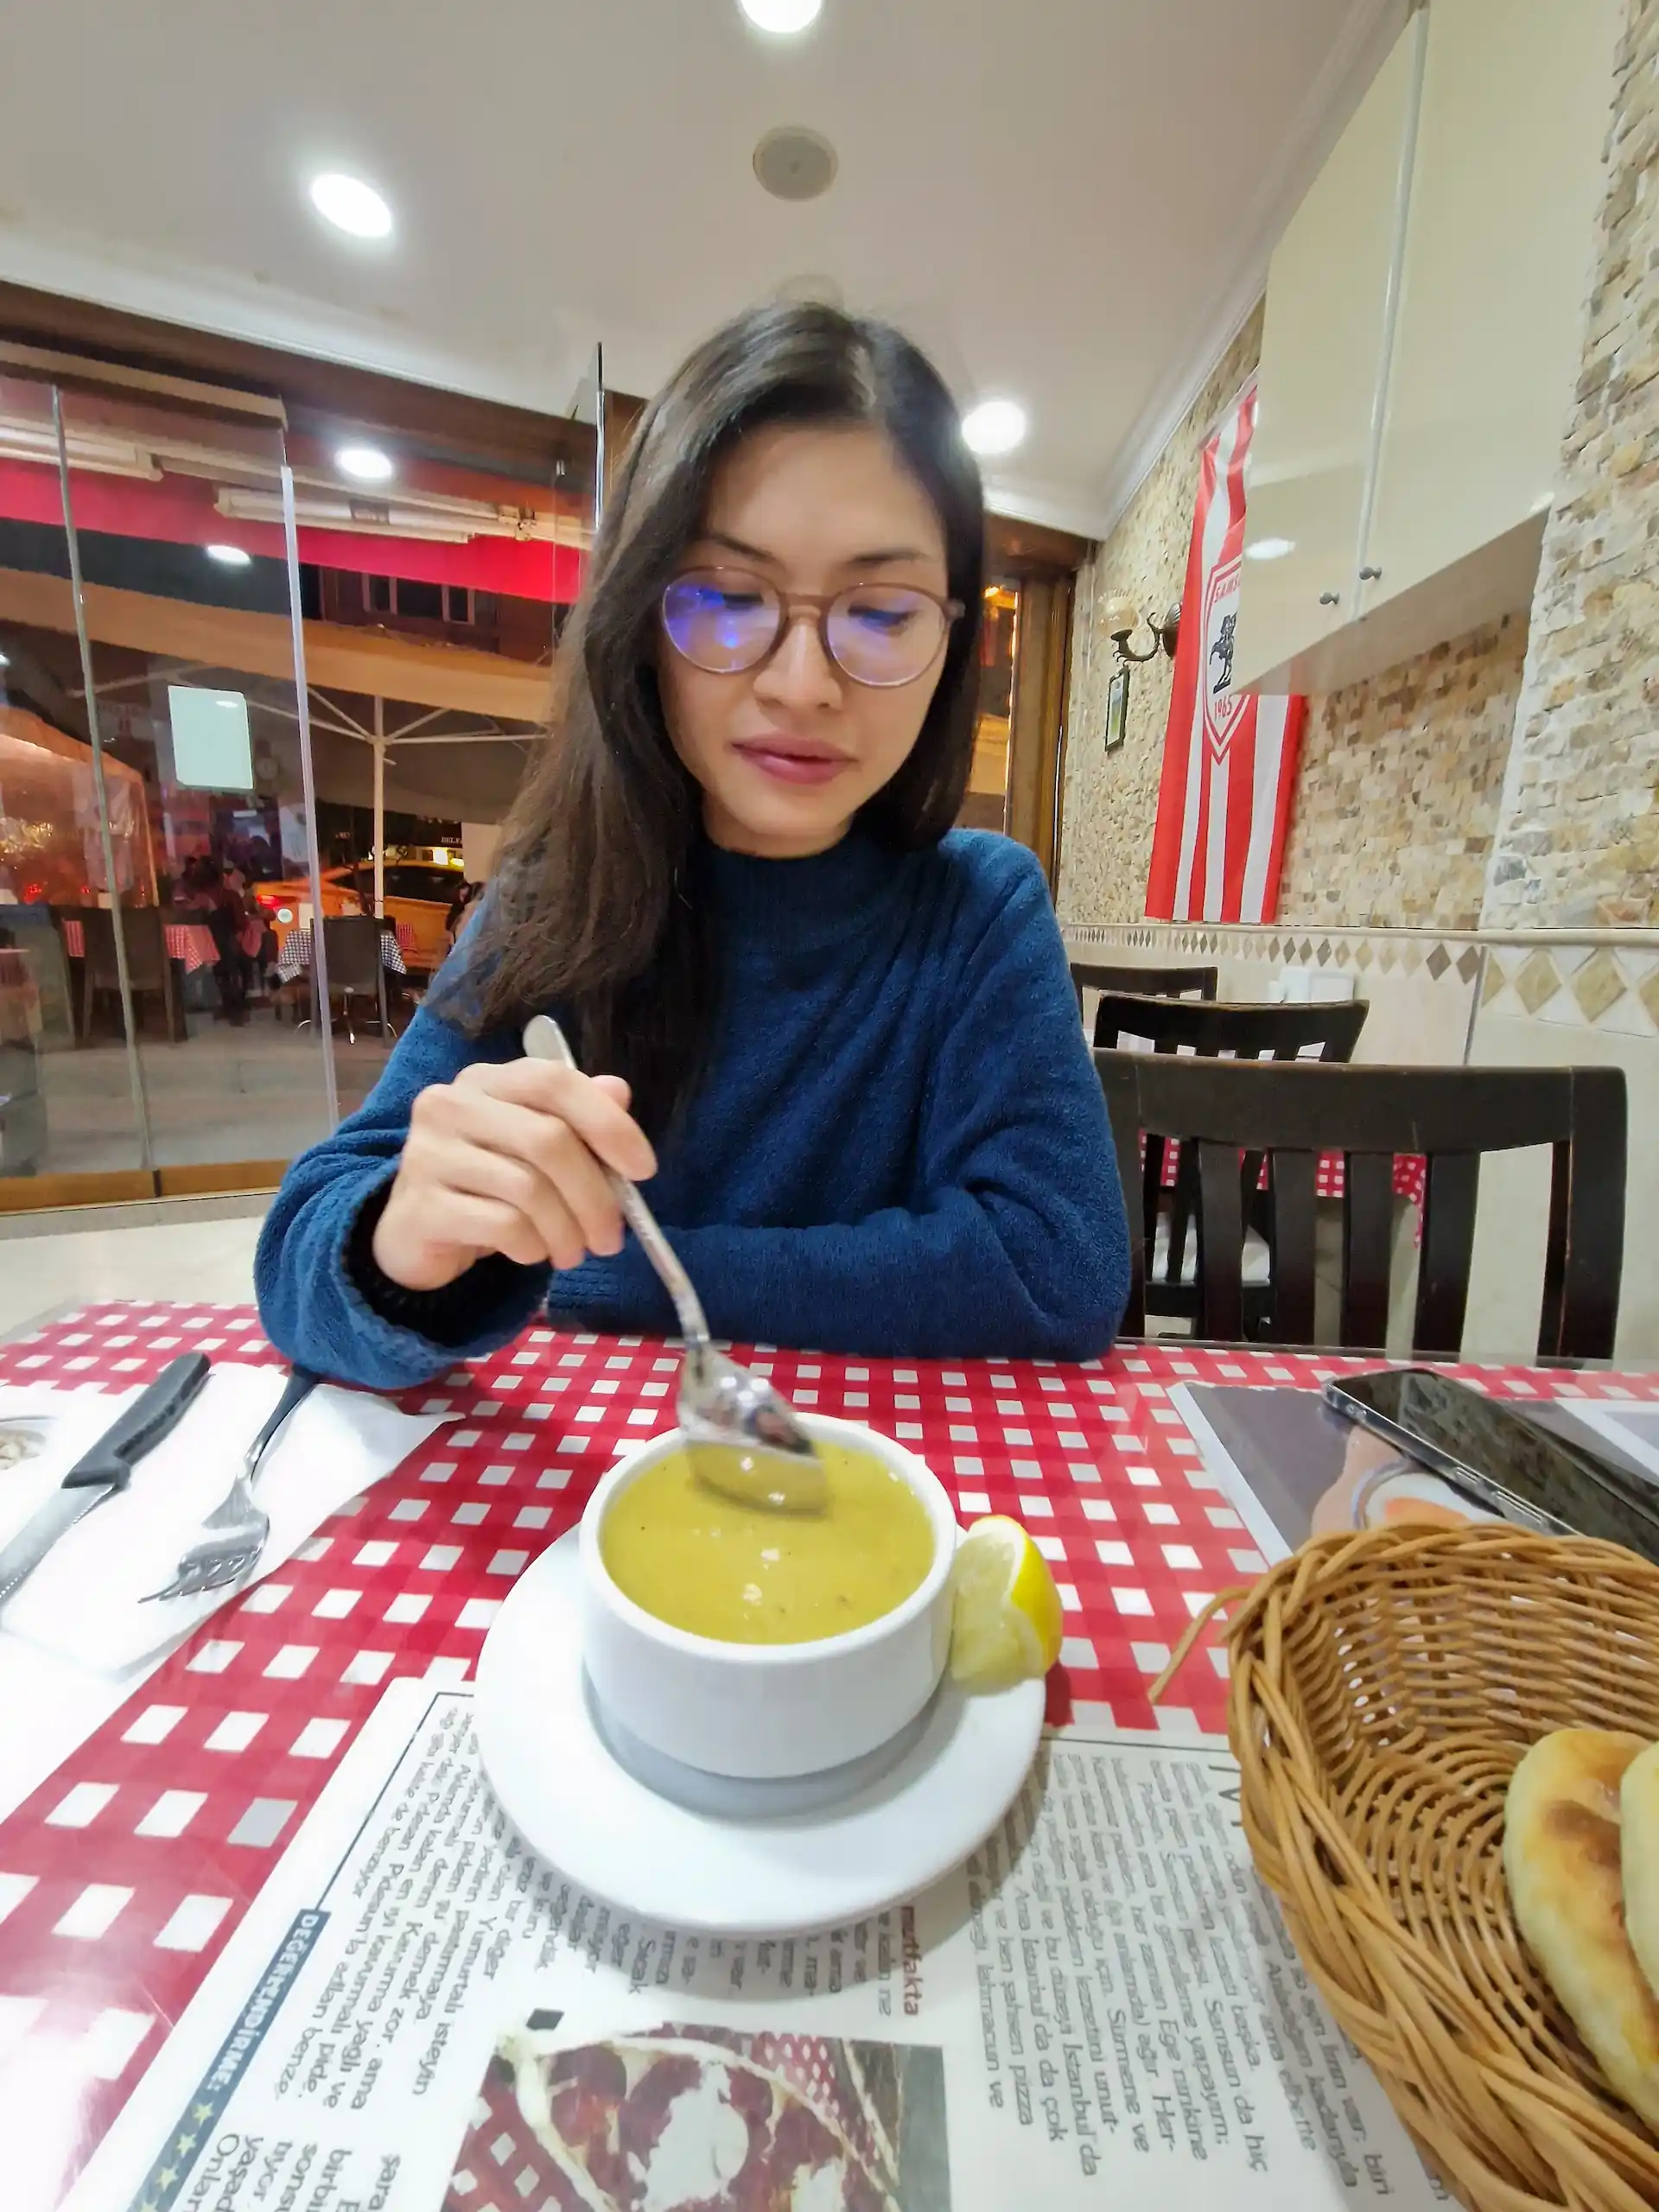 Clara mange une soupe aux lentilles. La soupe est jaune et servie avec un quartier de citron sur le côté.